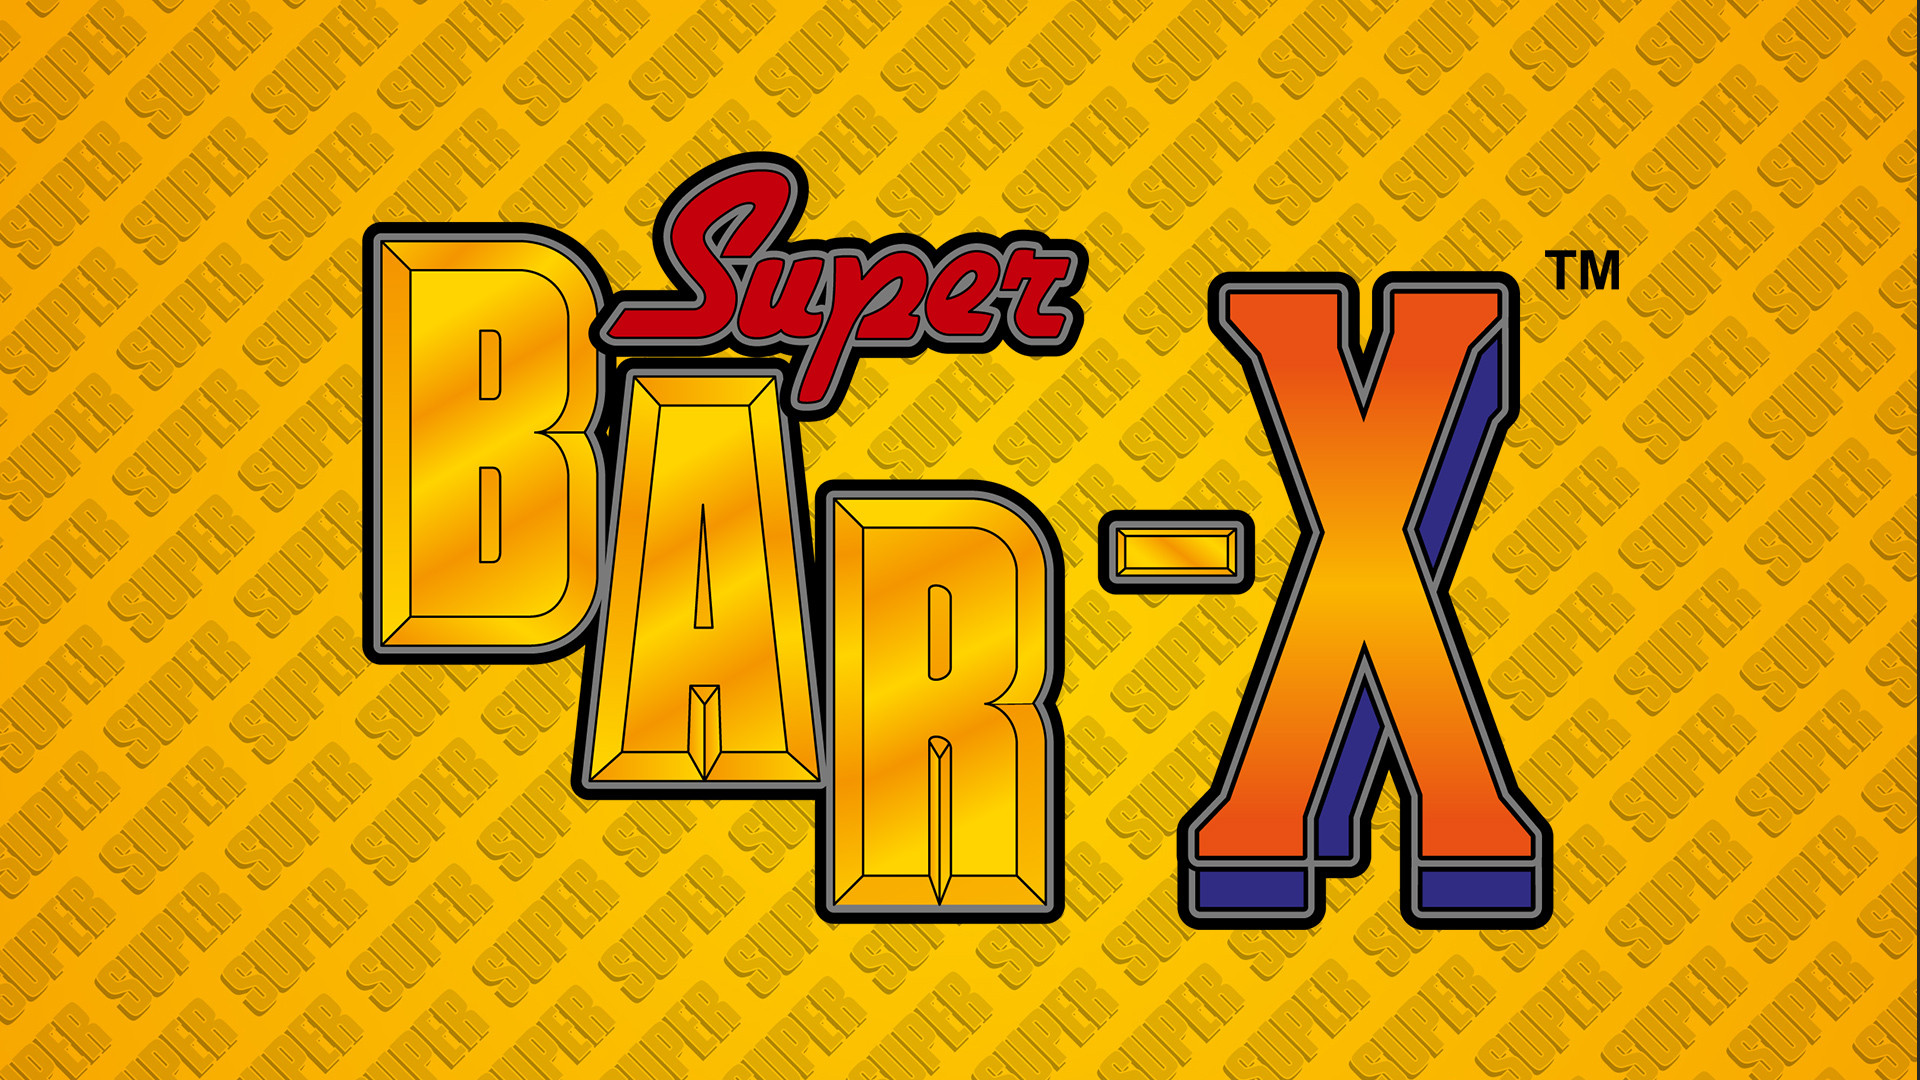 Super Bar-X